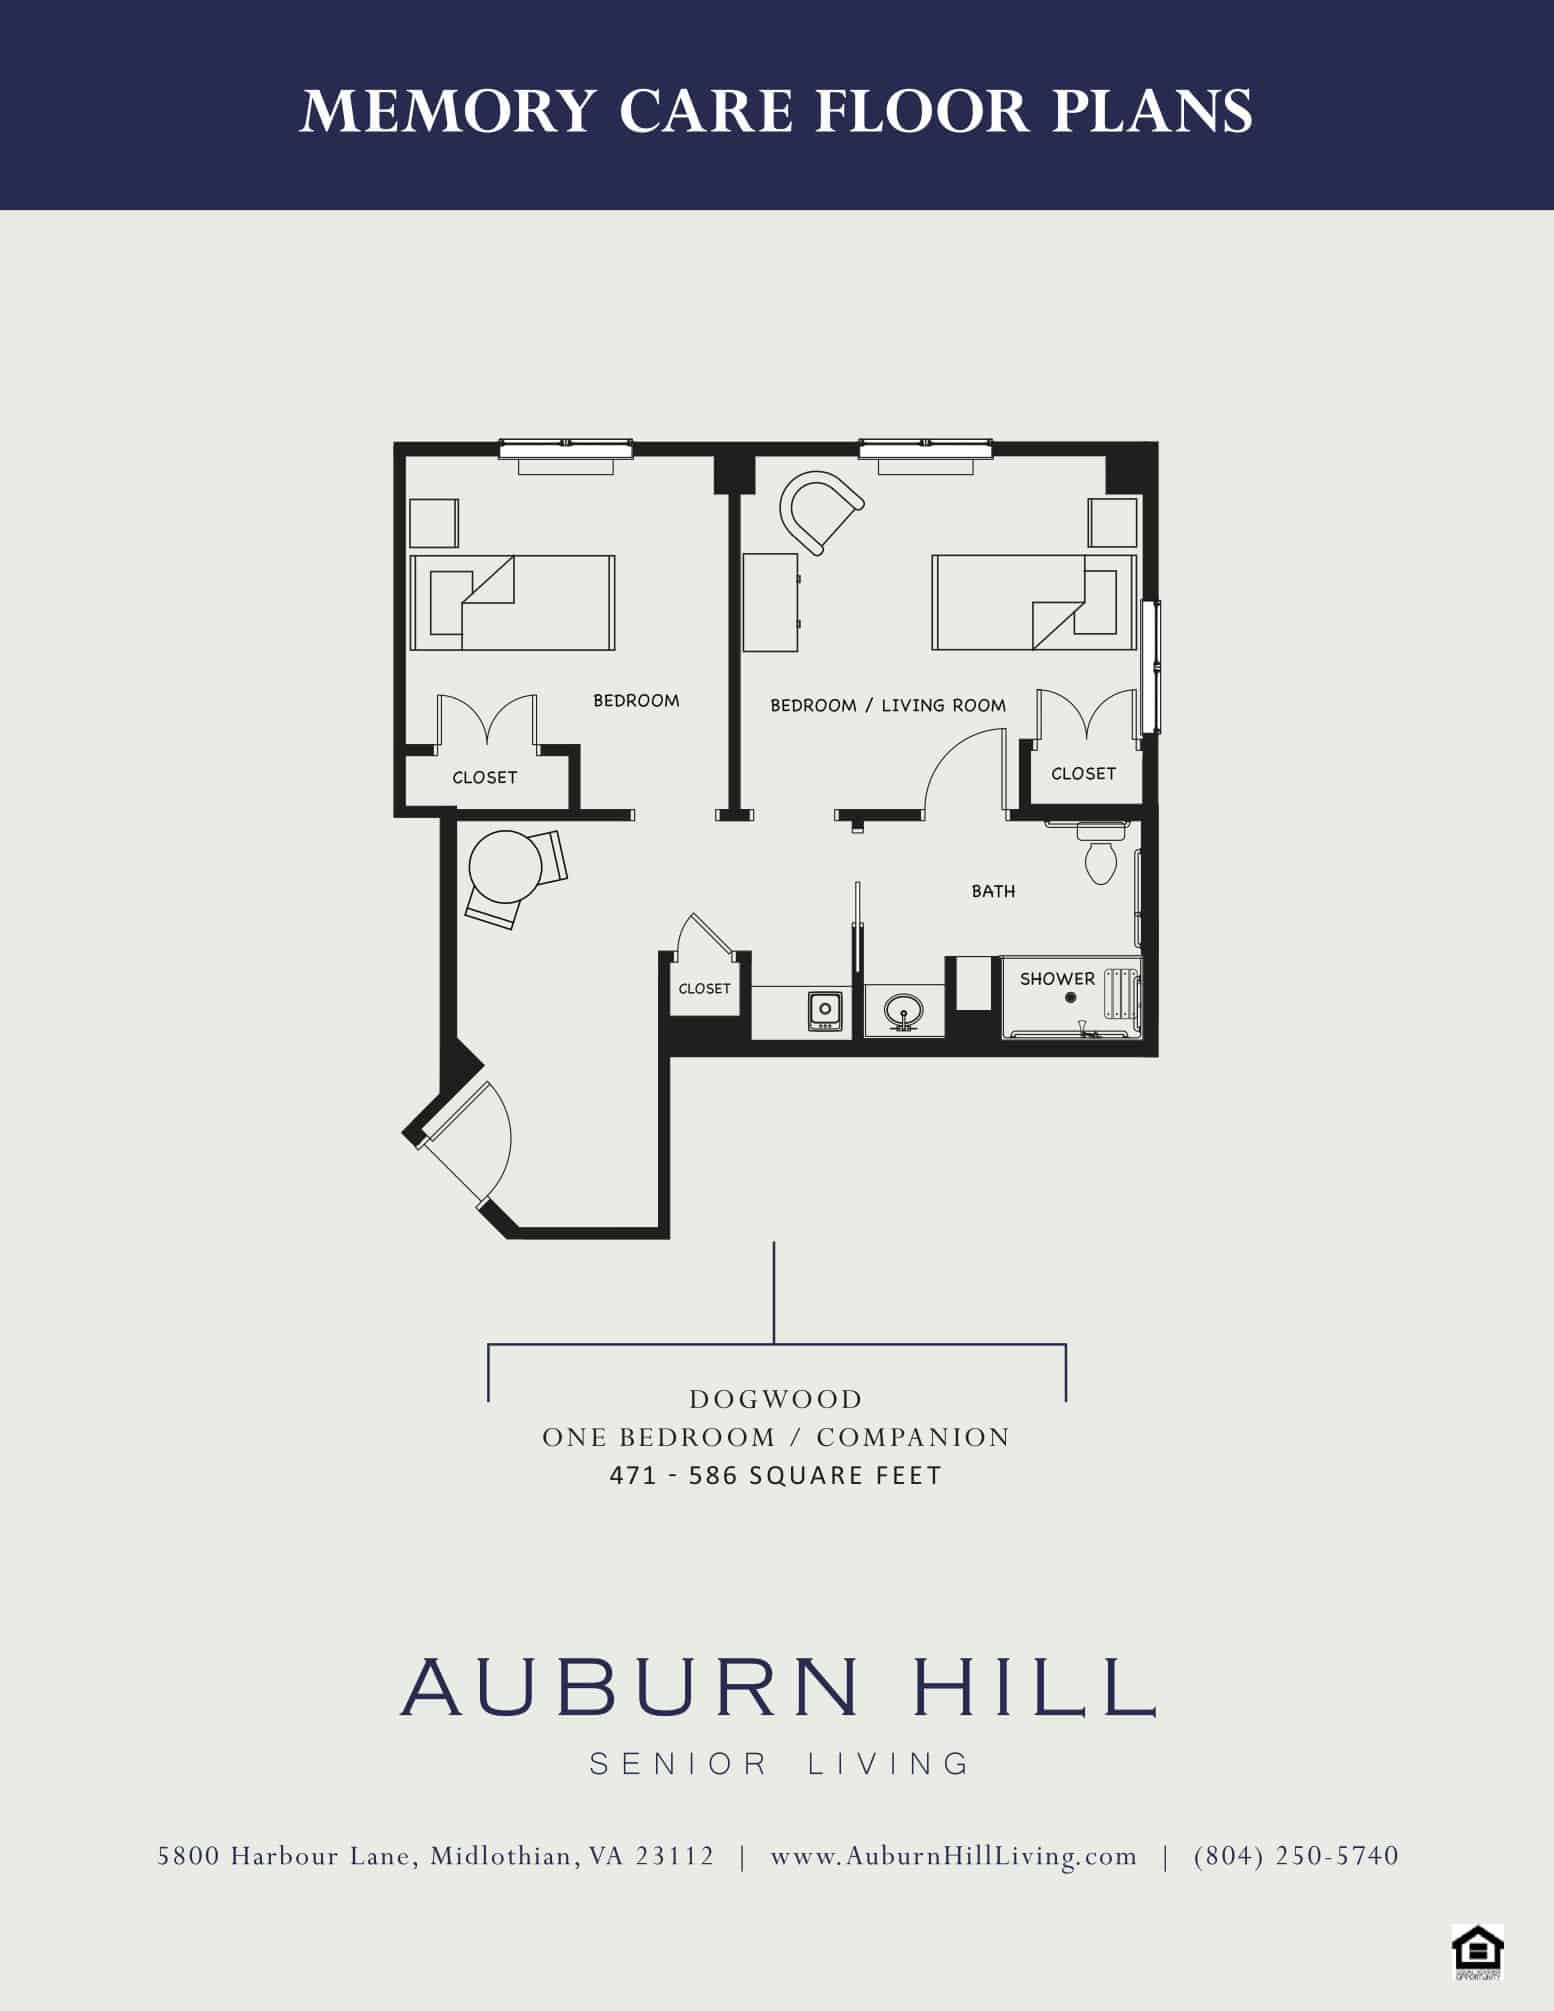 Auburn Hill Memory Care Floor Plans